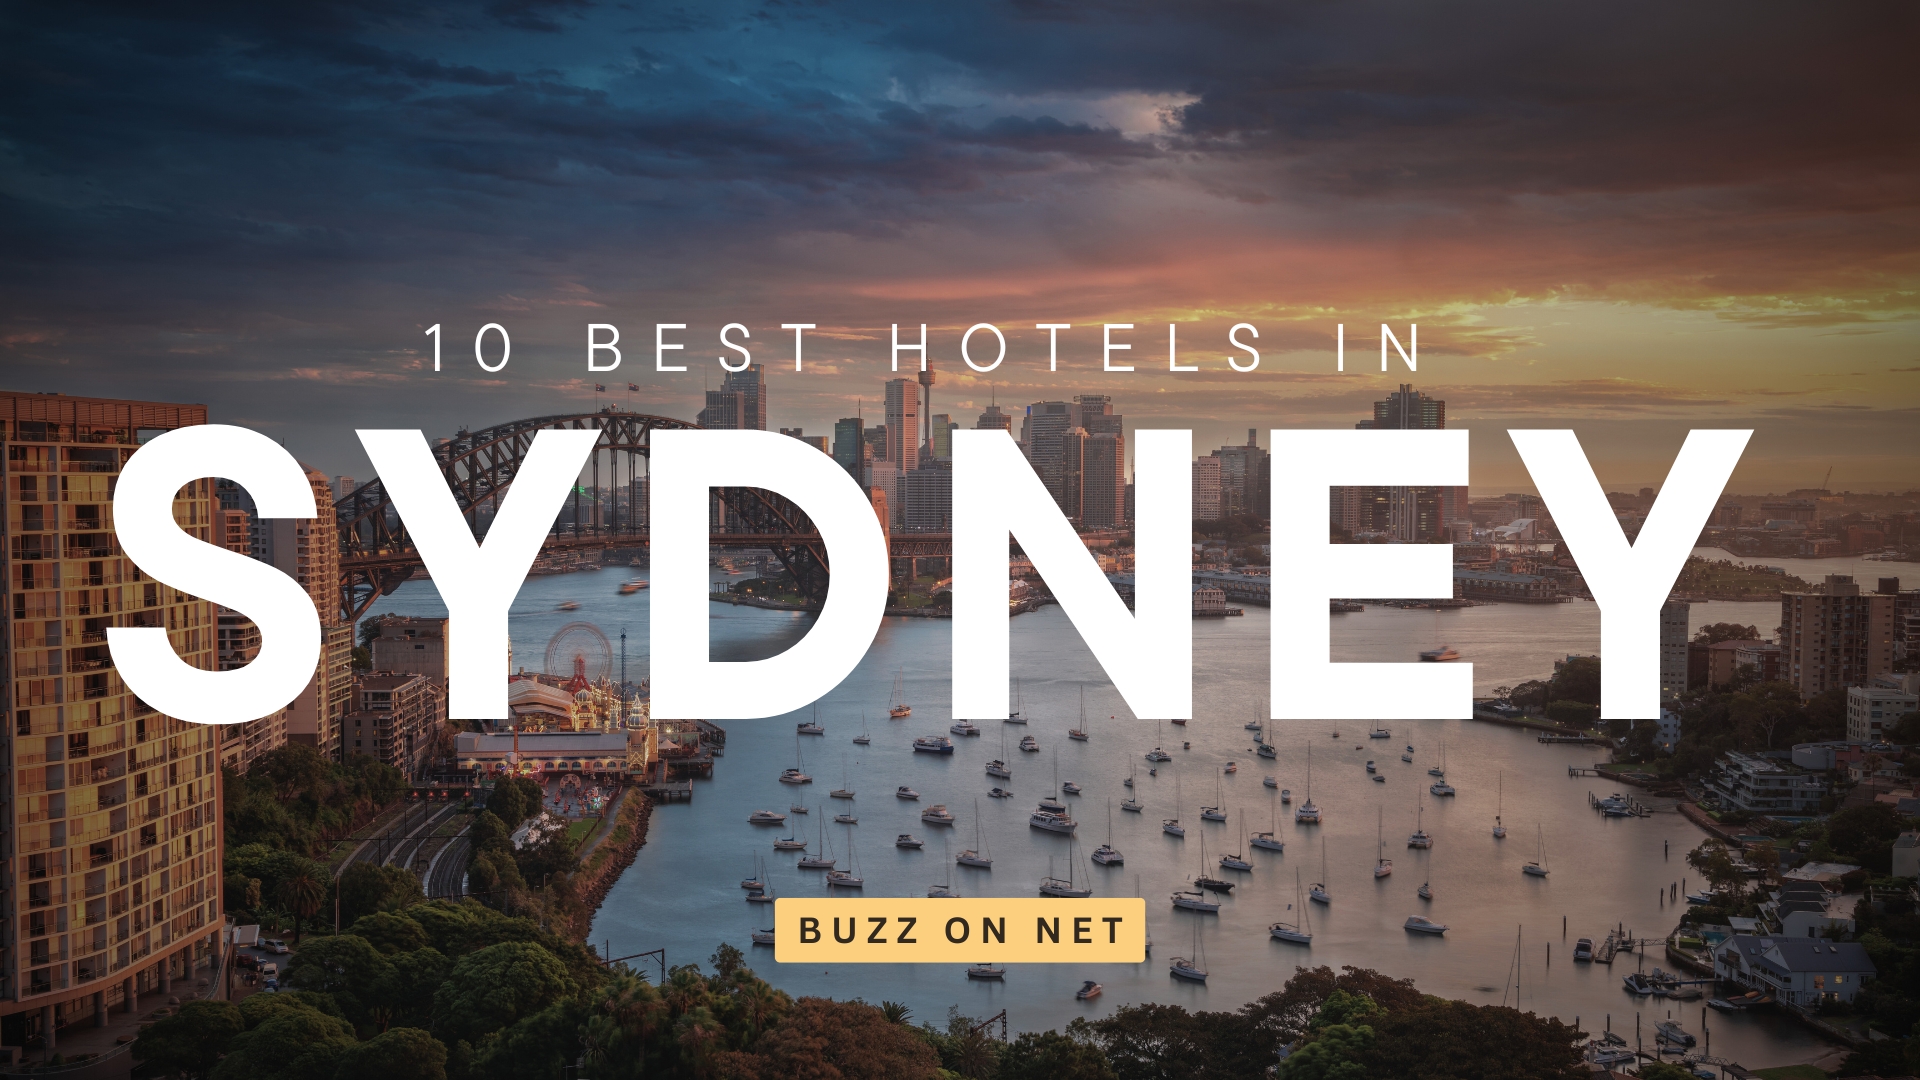 10 Best Hotels In Sydney, Buzz on net